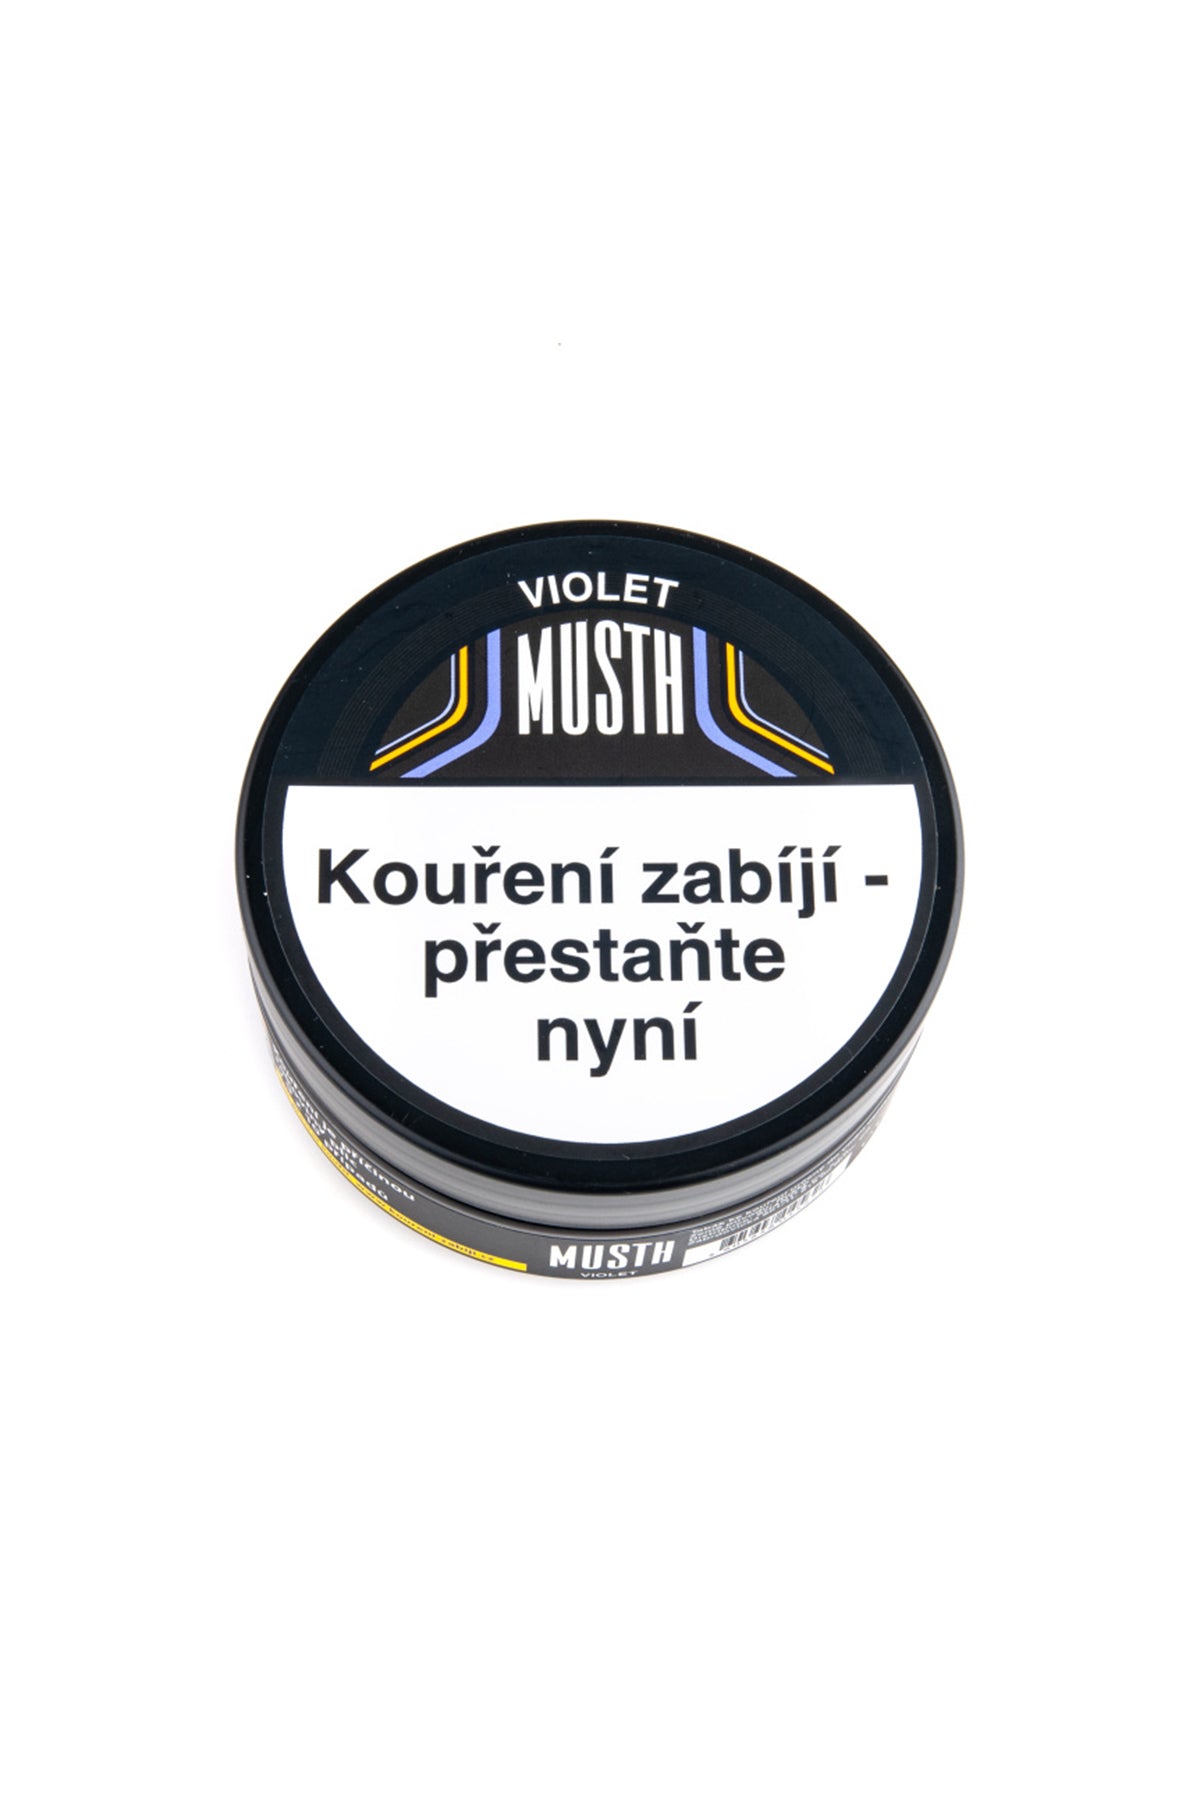 Tabák - MustH 125g - Violet